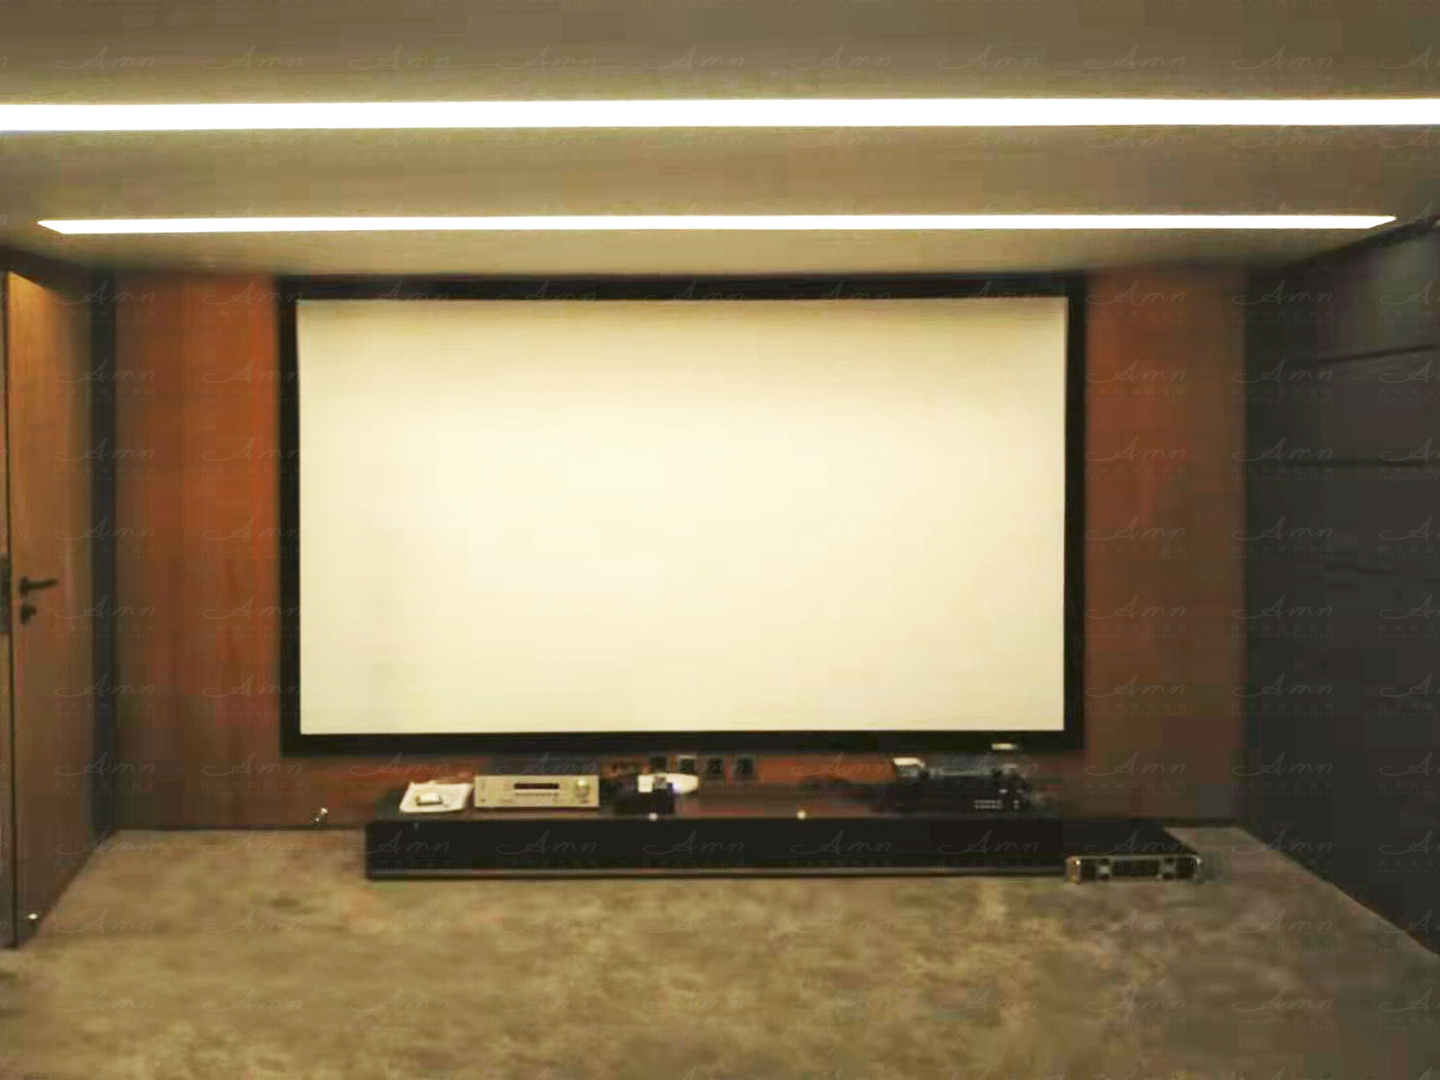 星河湾精装修阿米纳5.2独立影院 精彩绝伦的私家影音空间